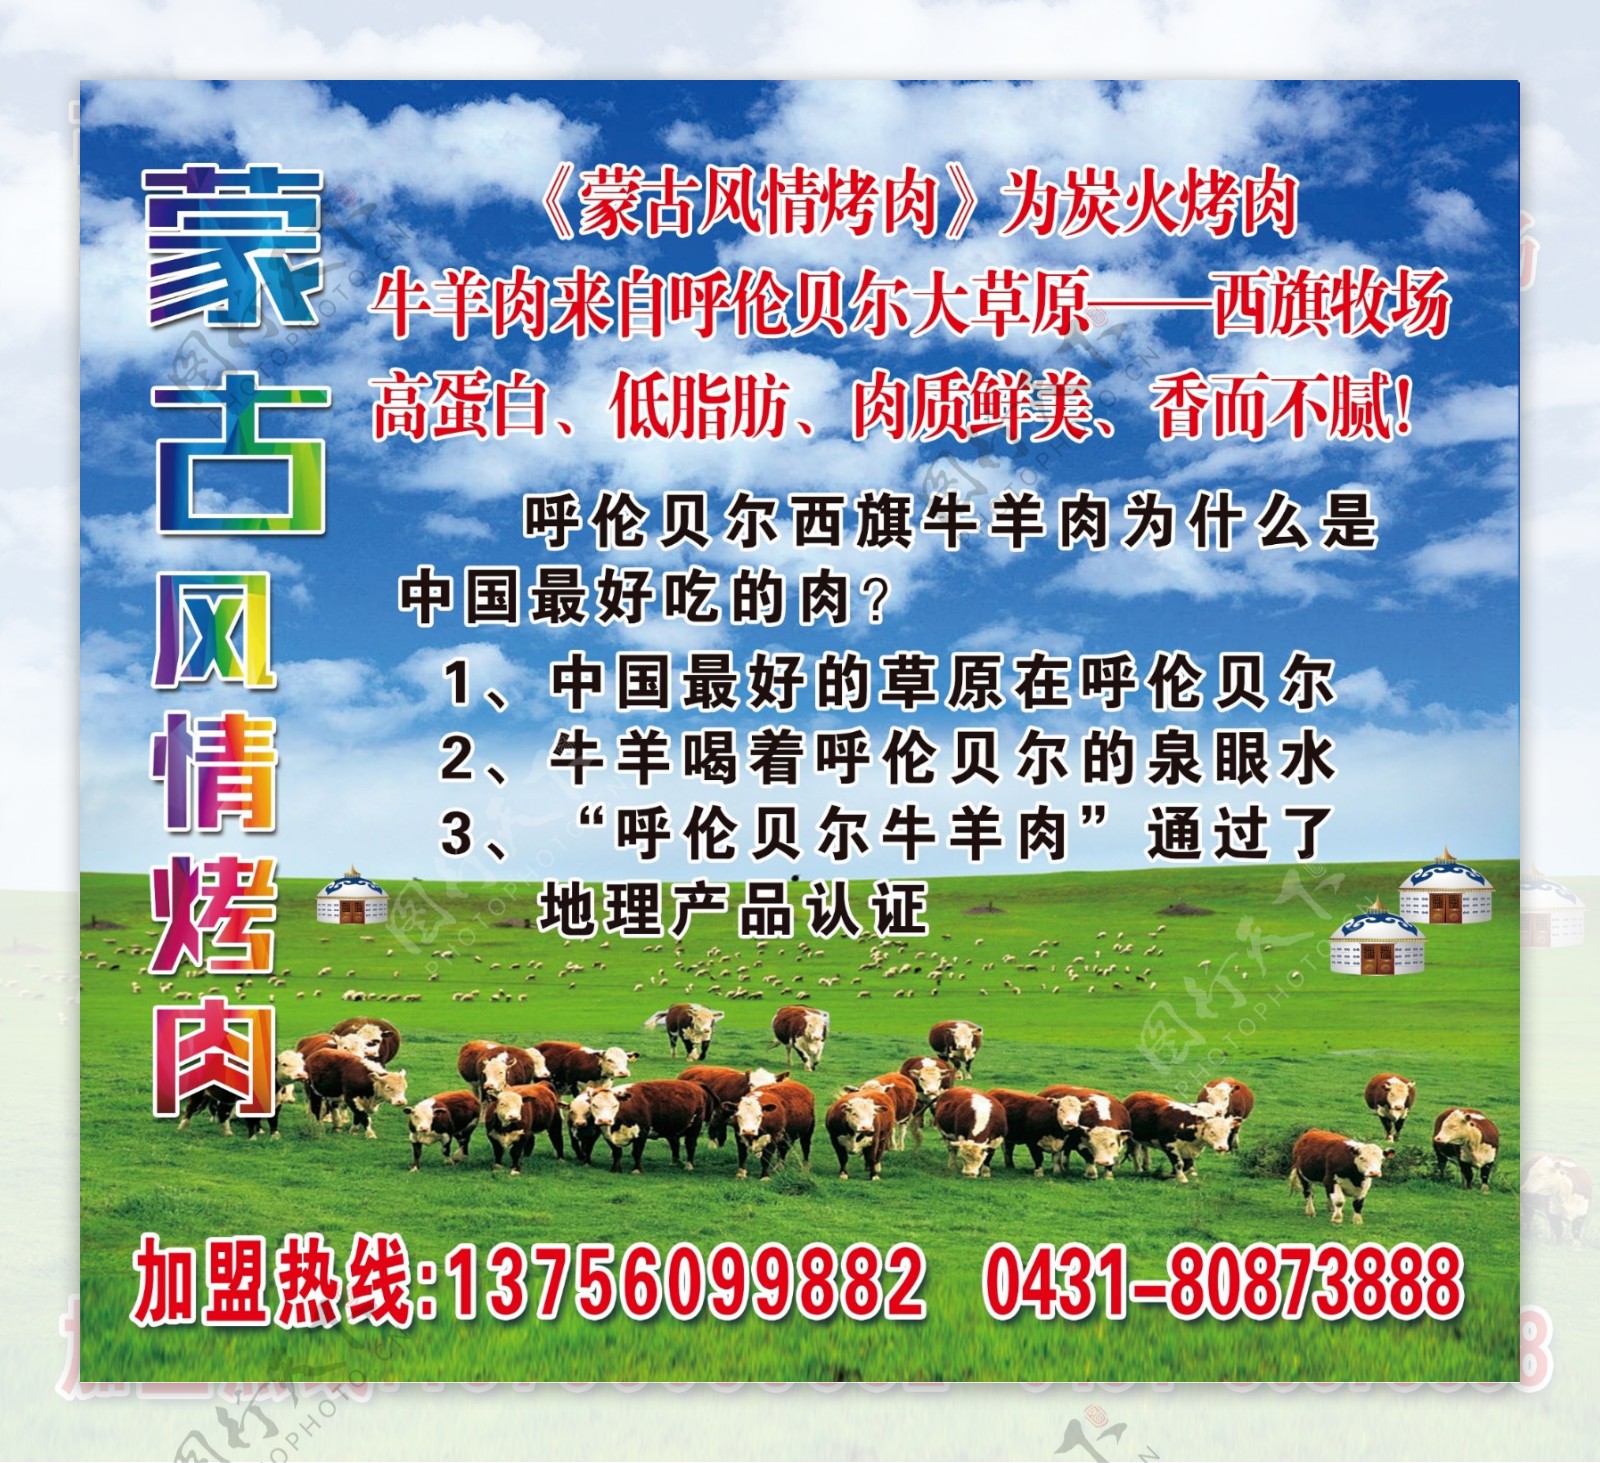 蒙古绿色大草原牛羊